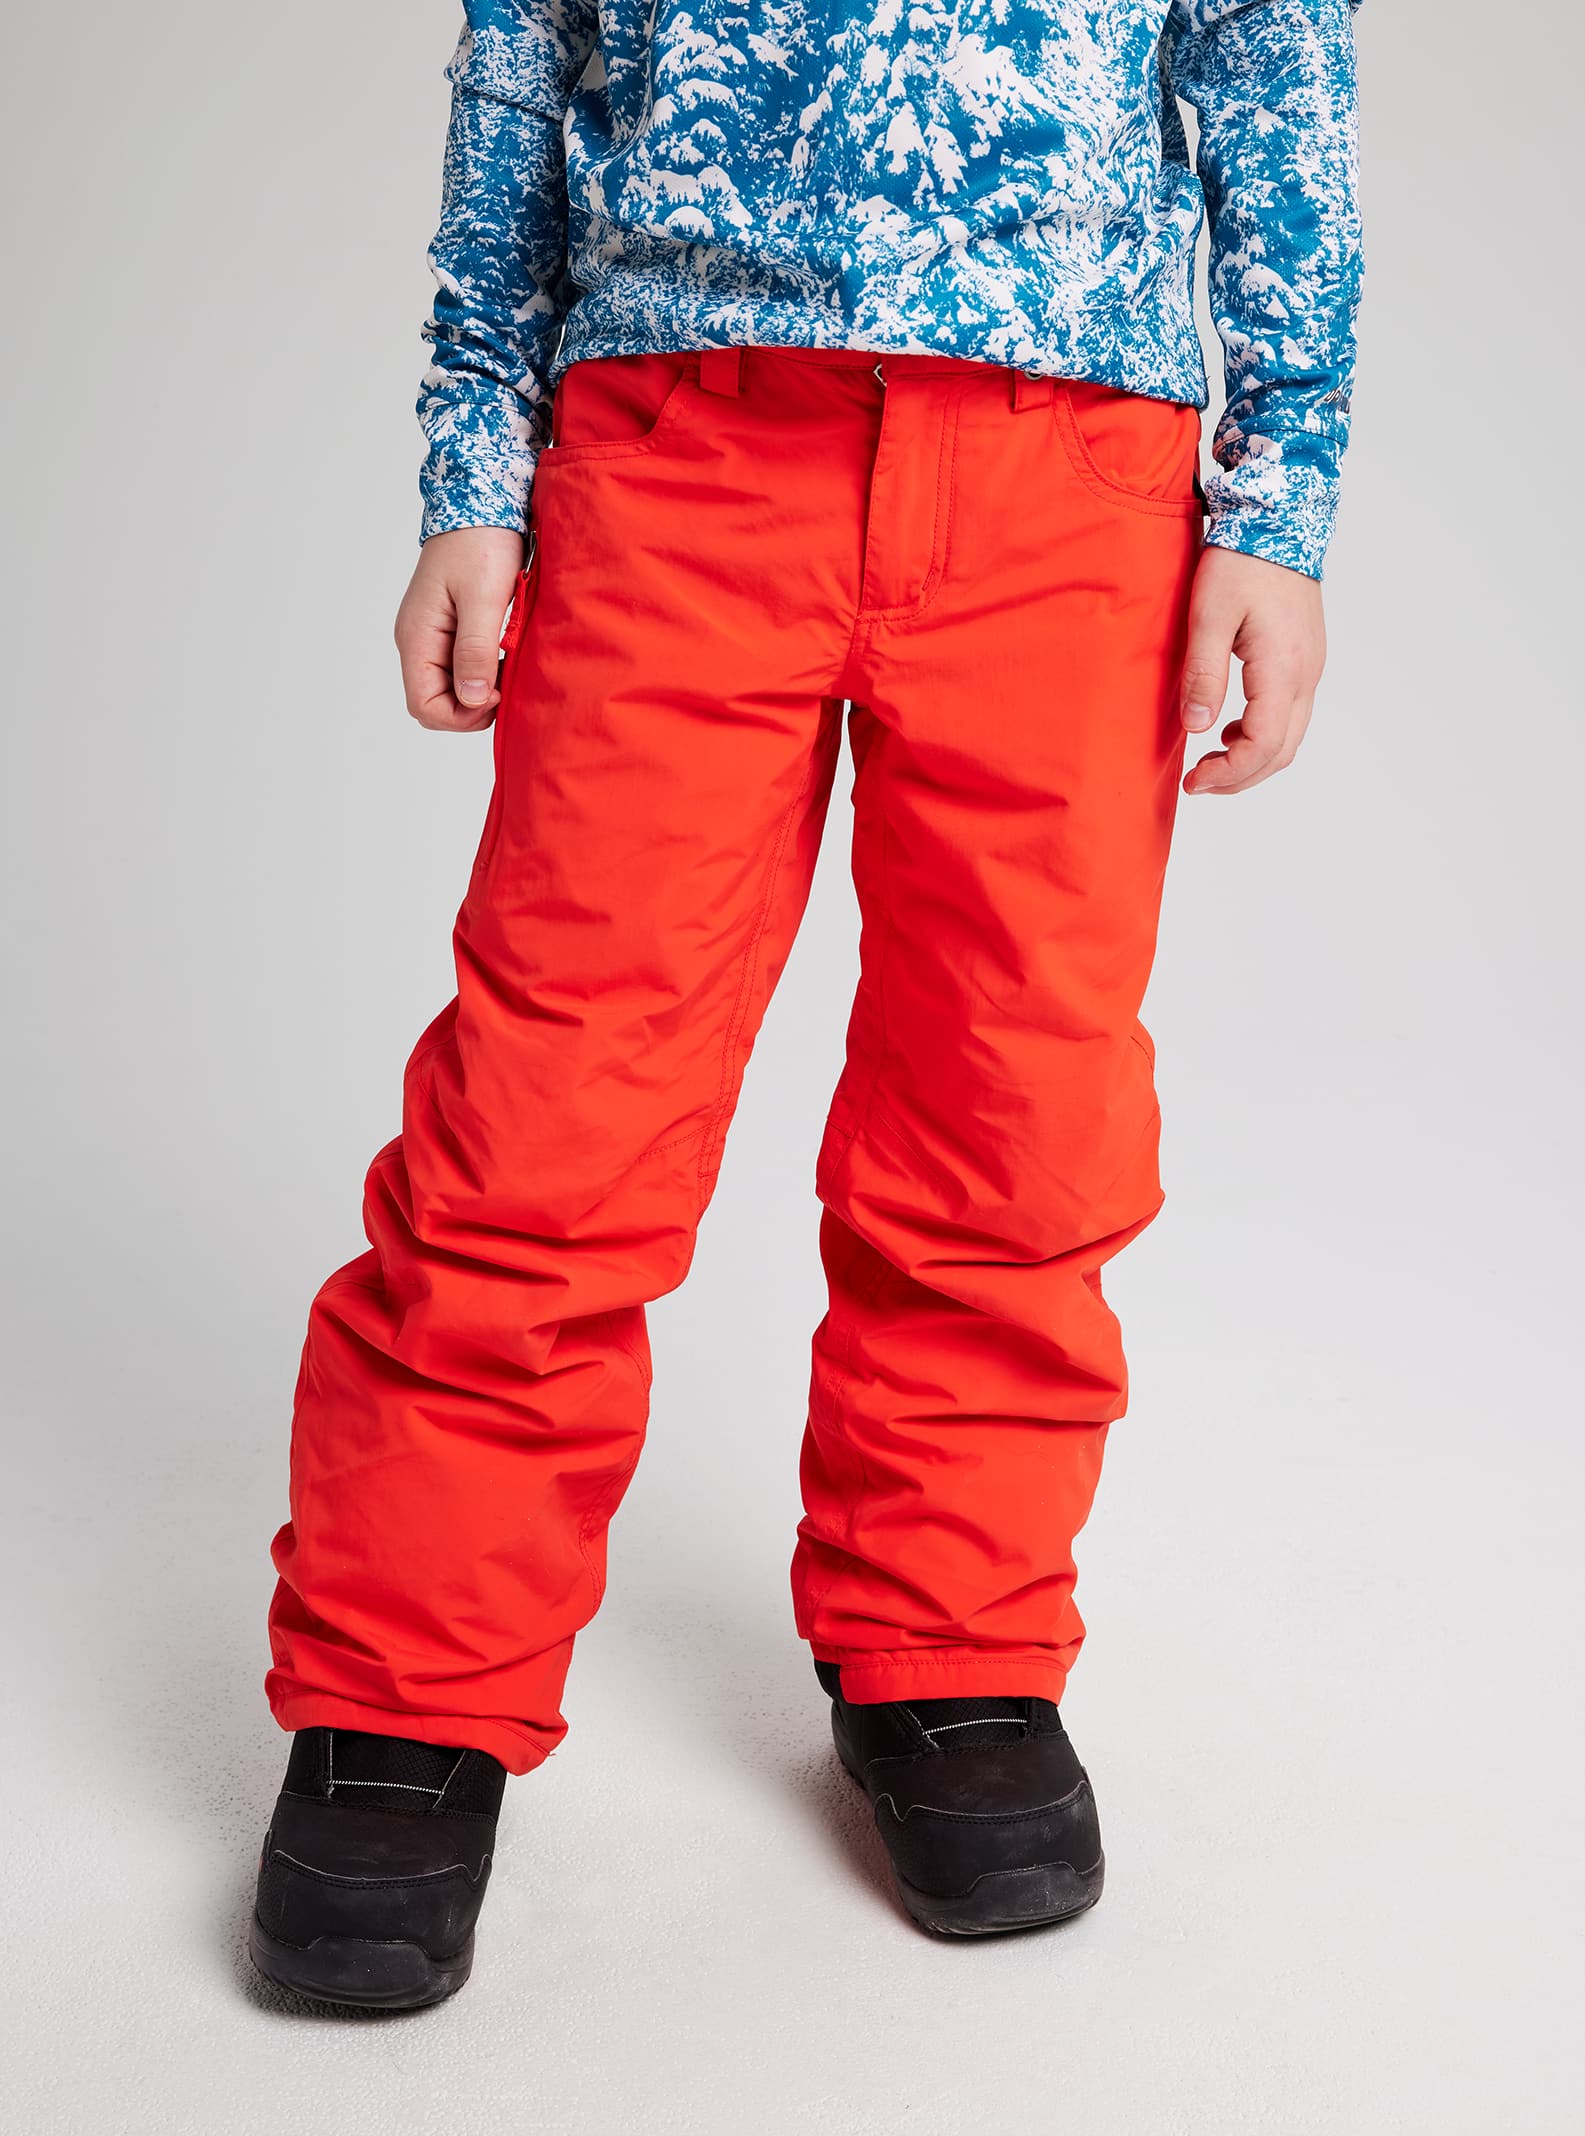 Kids' Snow Pants & Bibs | Burton Snowboards US